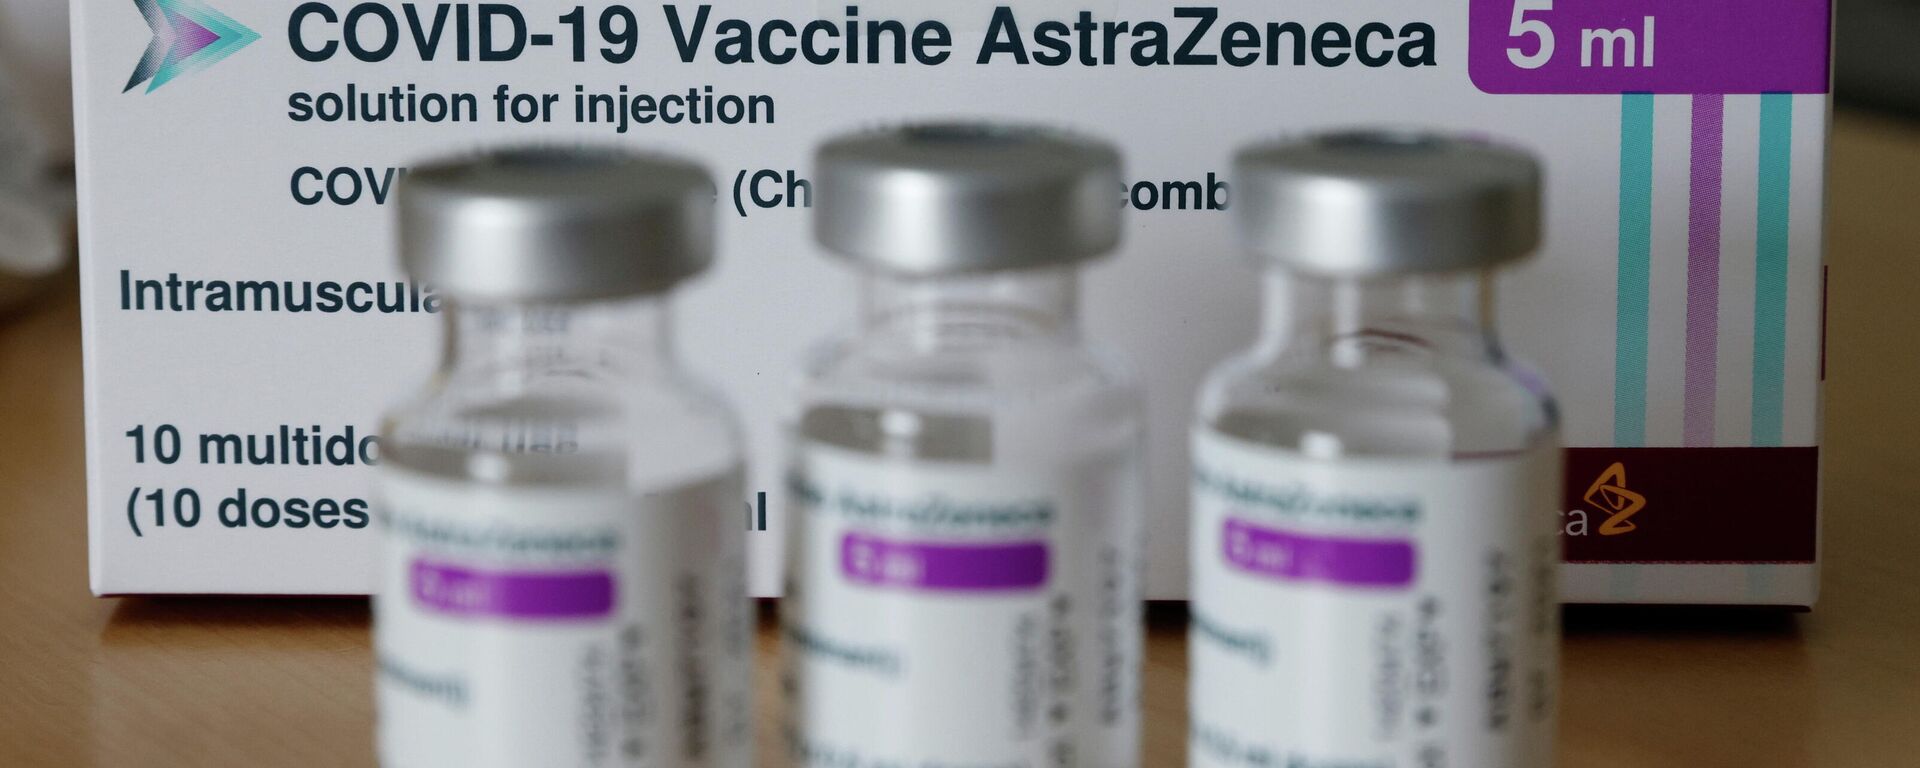 Vacuna contra el COVID-19 del laboratorio AstraZeneca - Sputnik Mundo, 1920, 31.05.2021